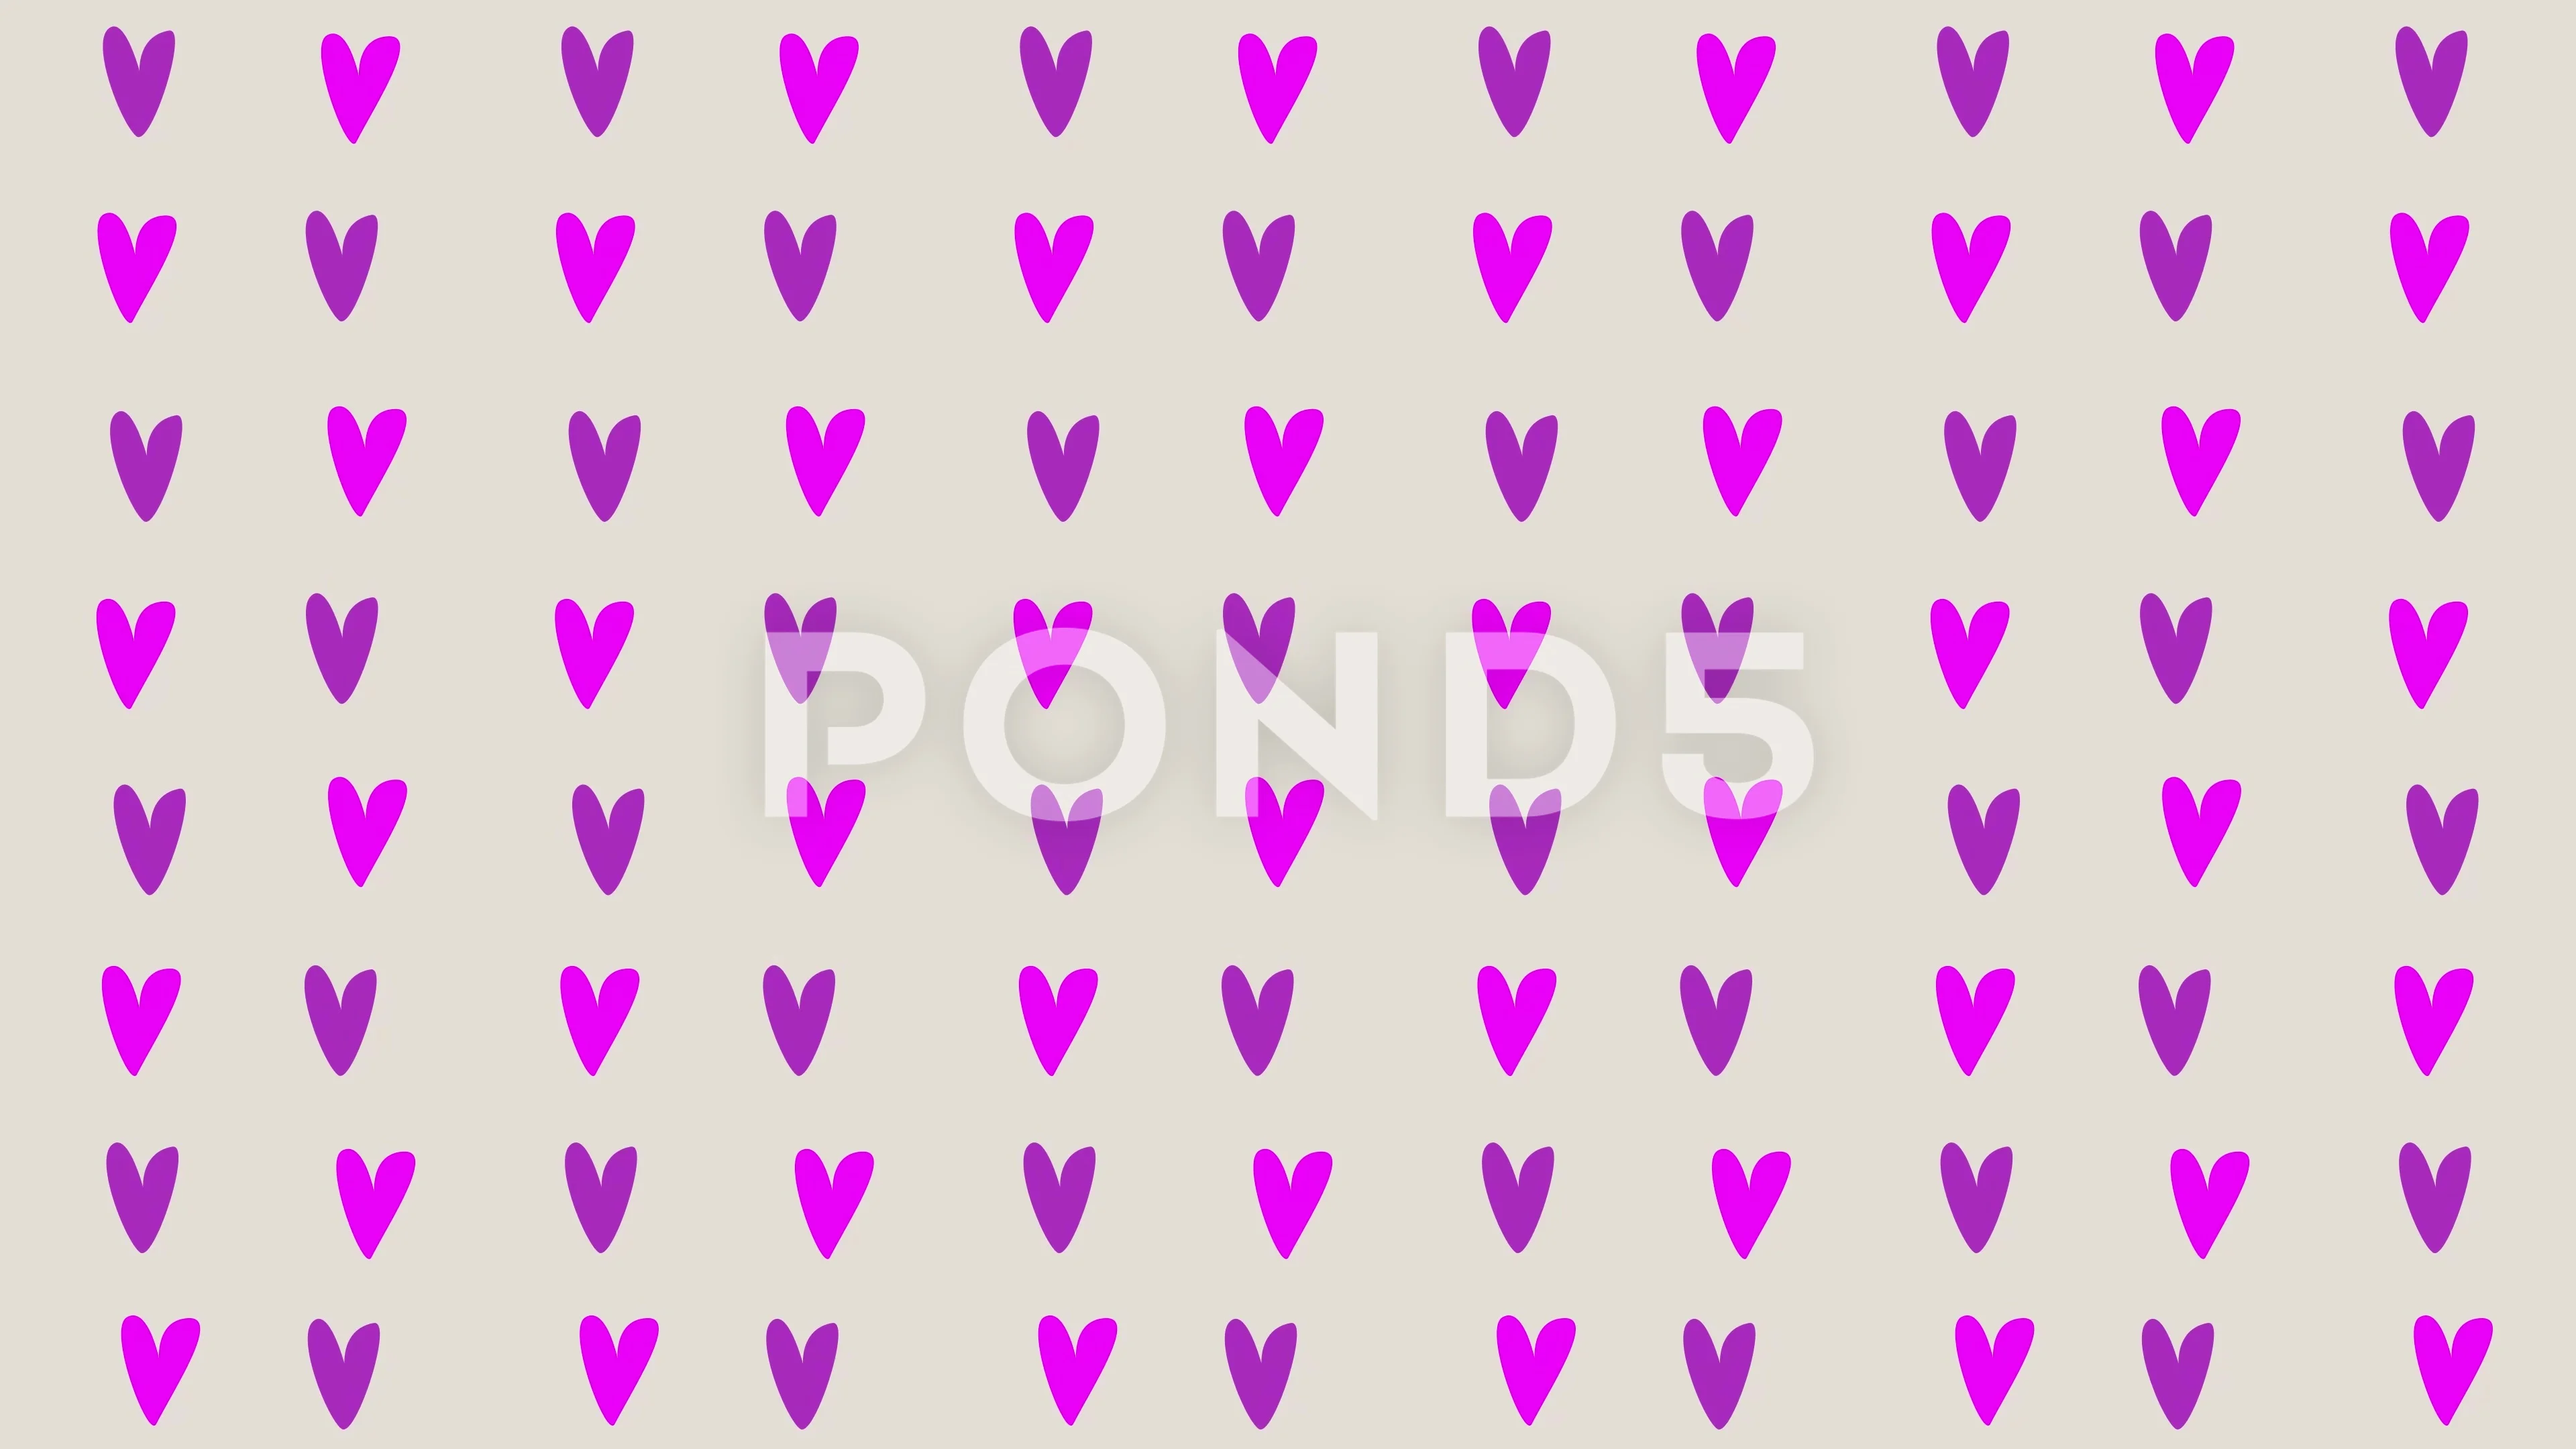 Pink Heart Glitter Design Sticker